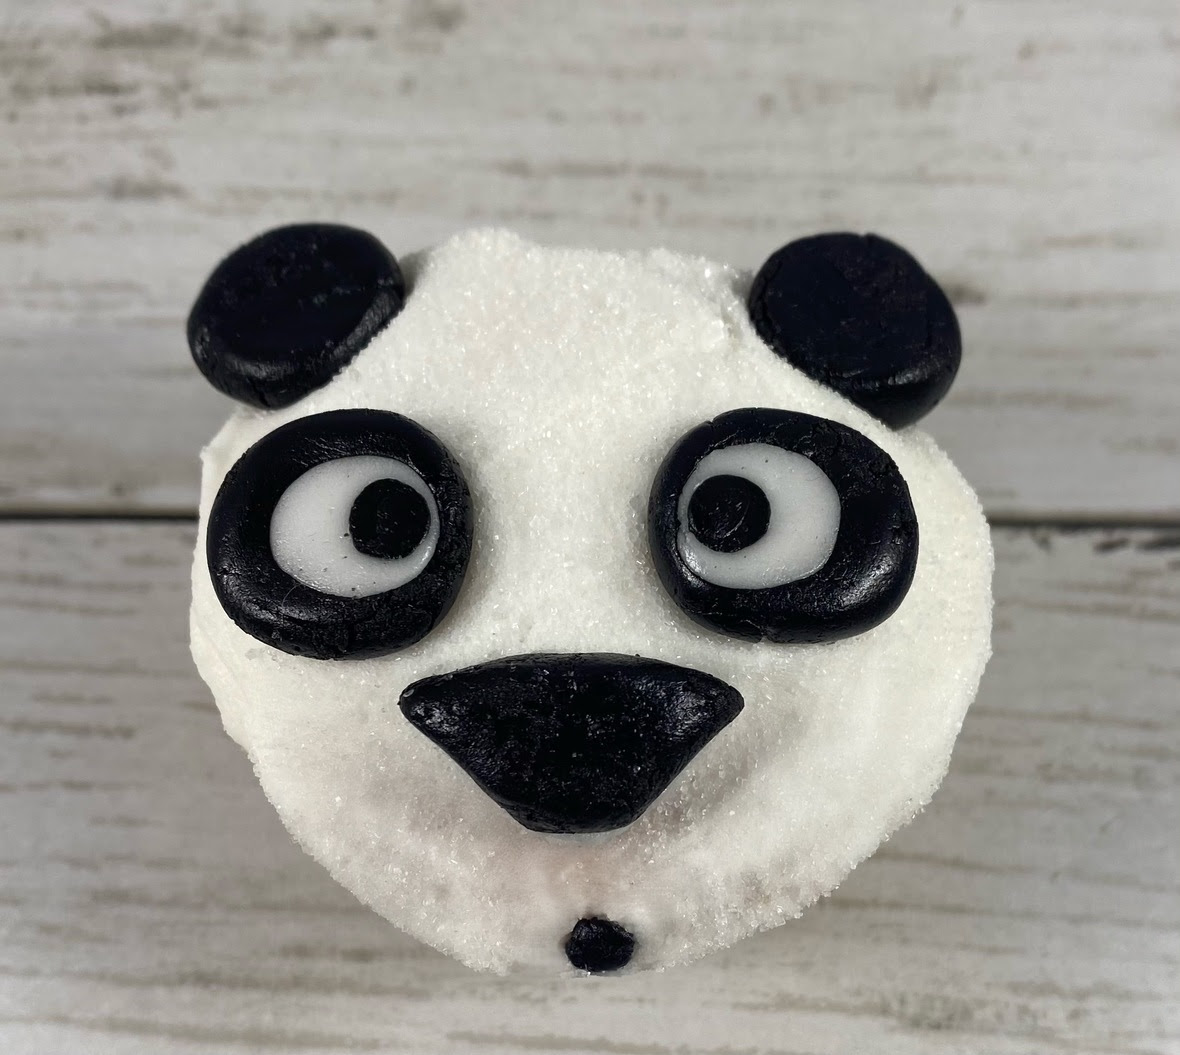 Panda Cookies